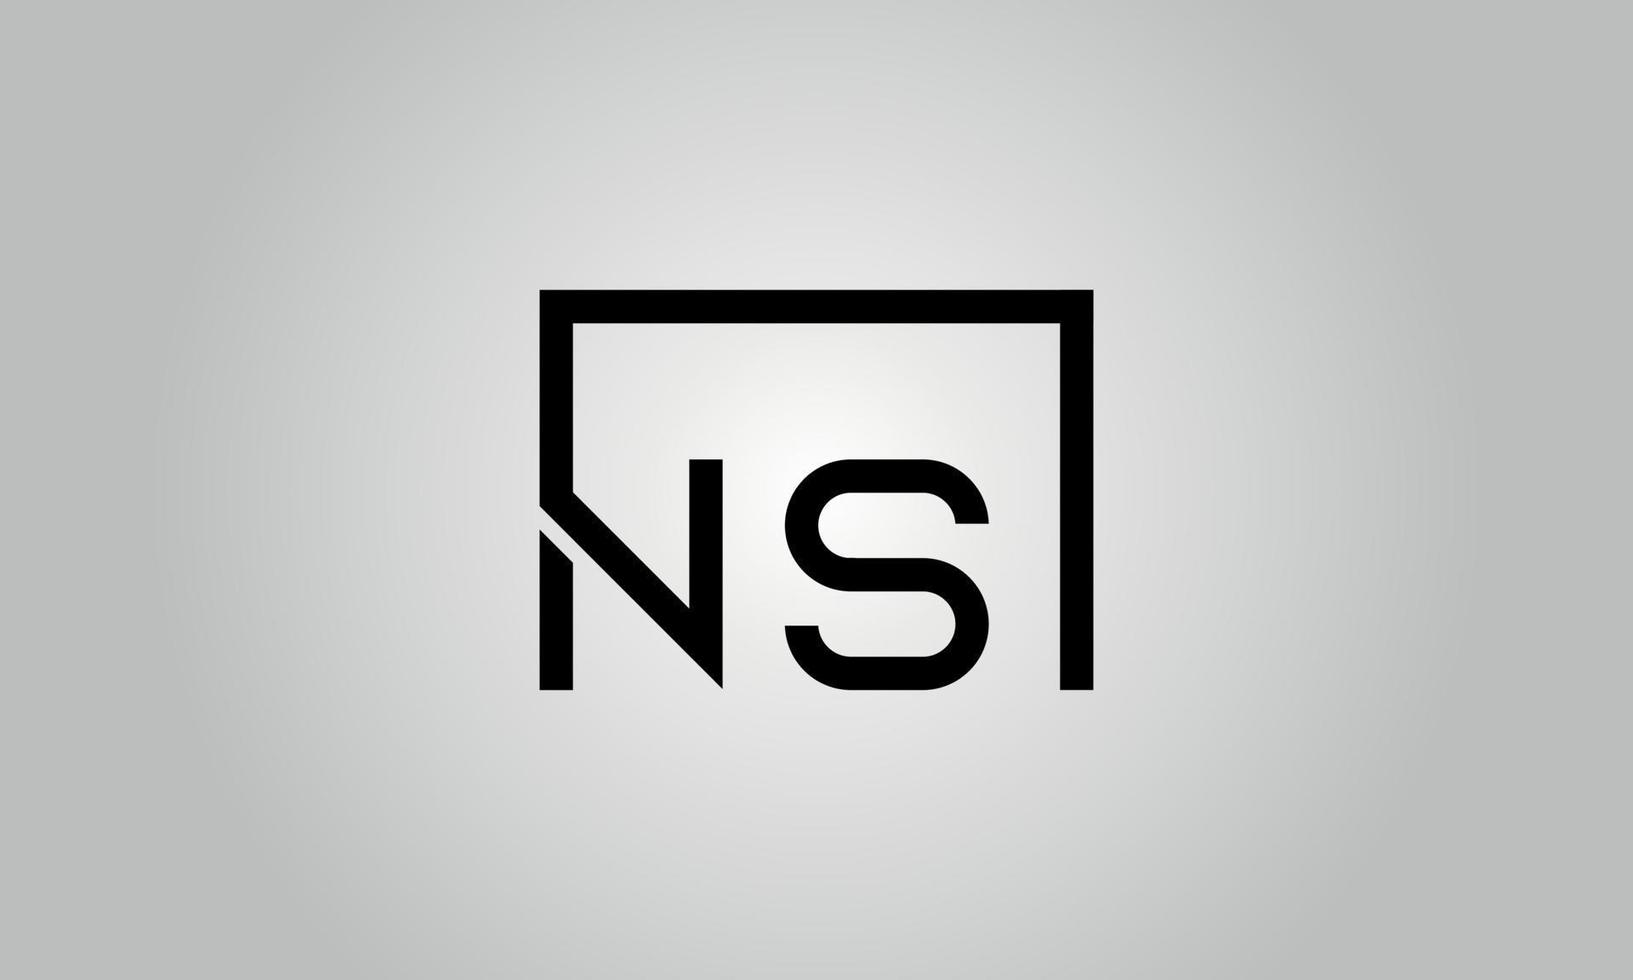 design de logotipo letra ns. ns logotipo com forma quadrada em cores pretas modelo de vetor livre.